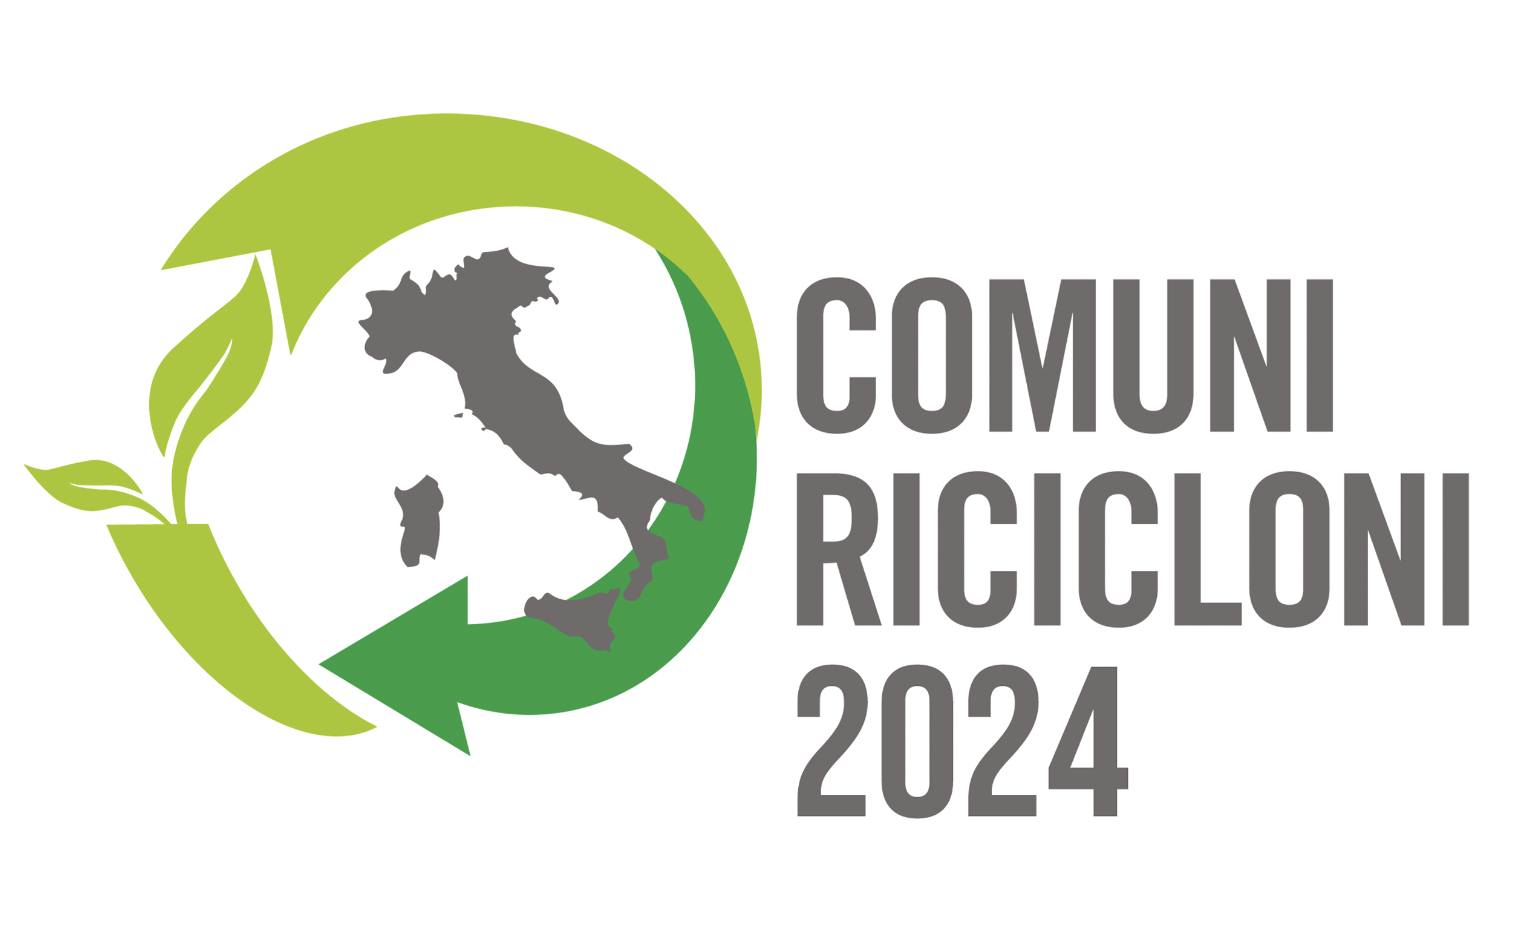 Comuni Ricicloni 2024, sono tre i comuni campani tra i vincitori assoluti